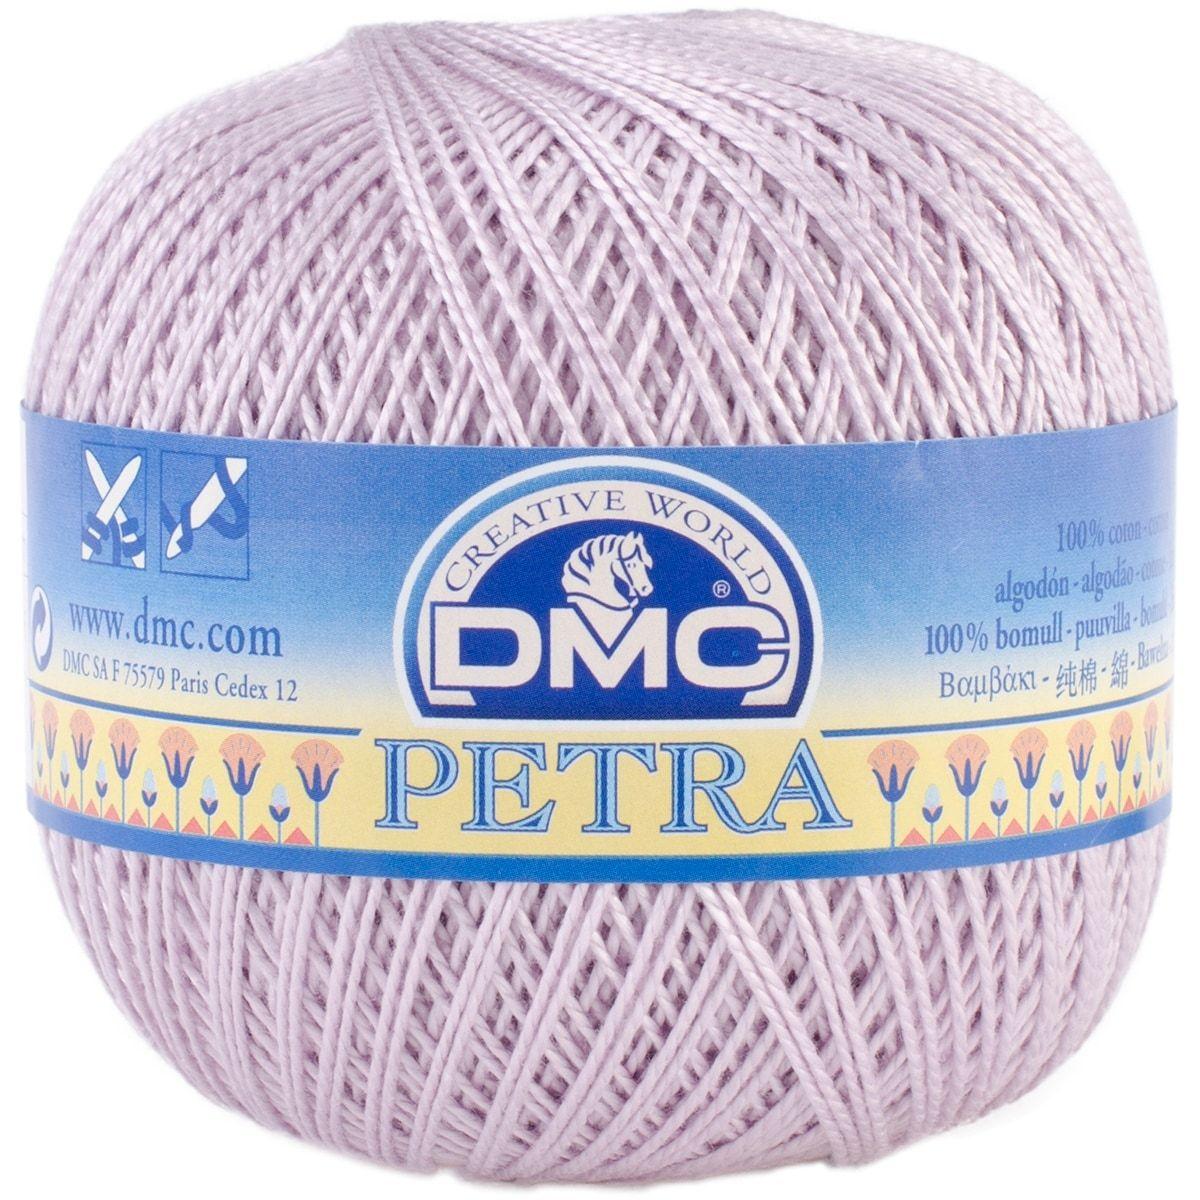 Пряжа для вязания DMC Петра №5 цвет сиреневый